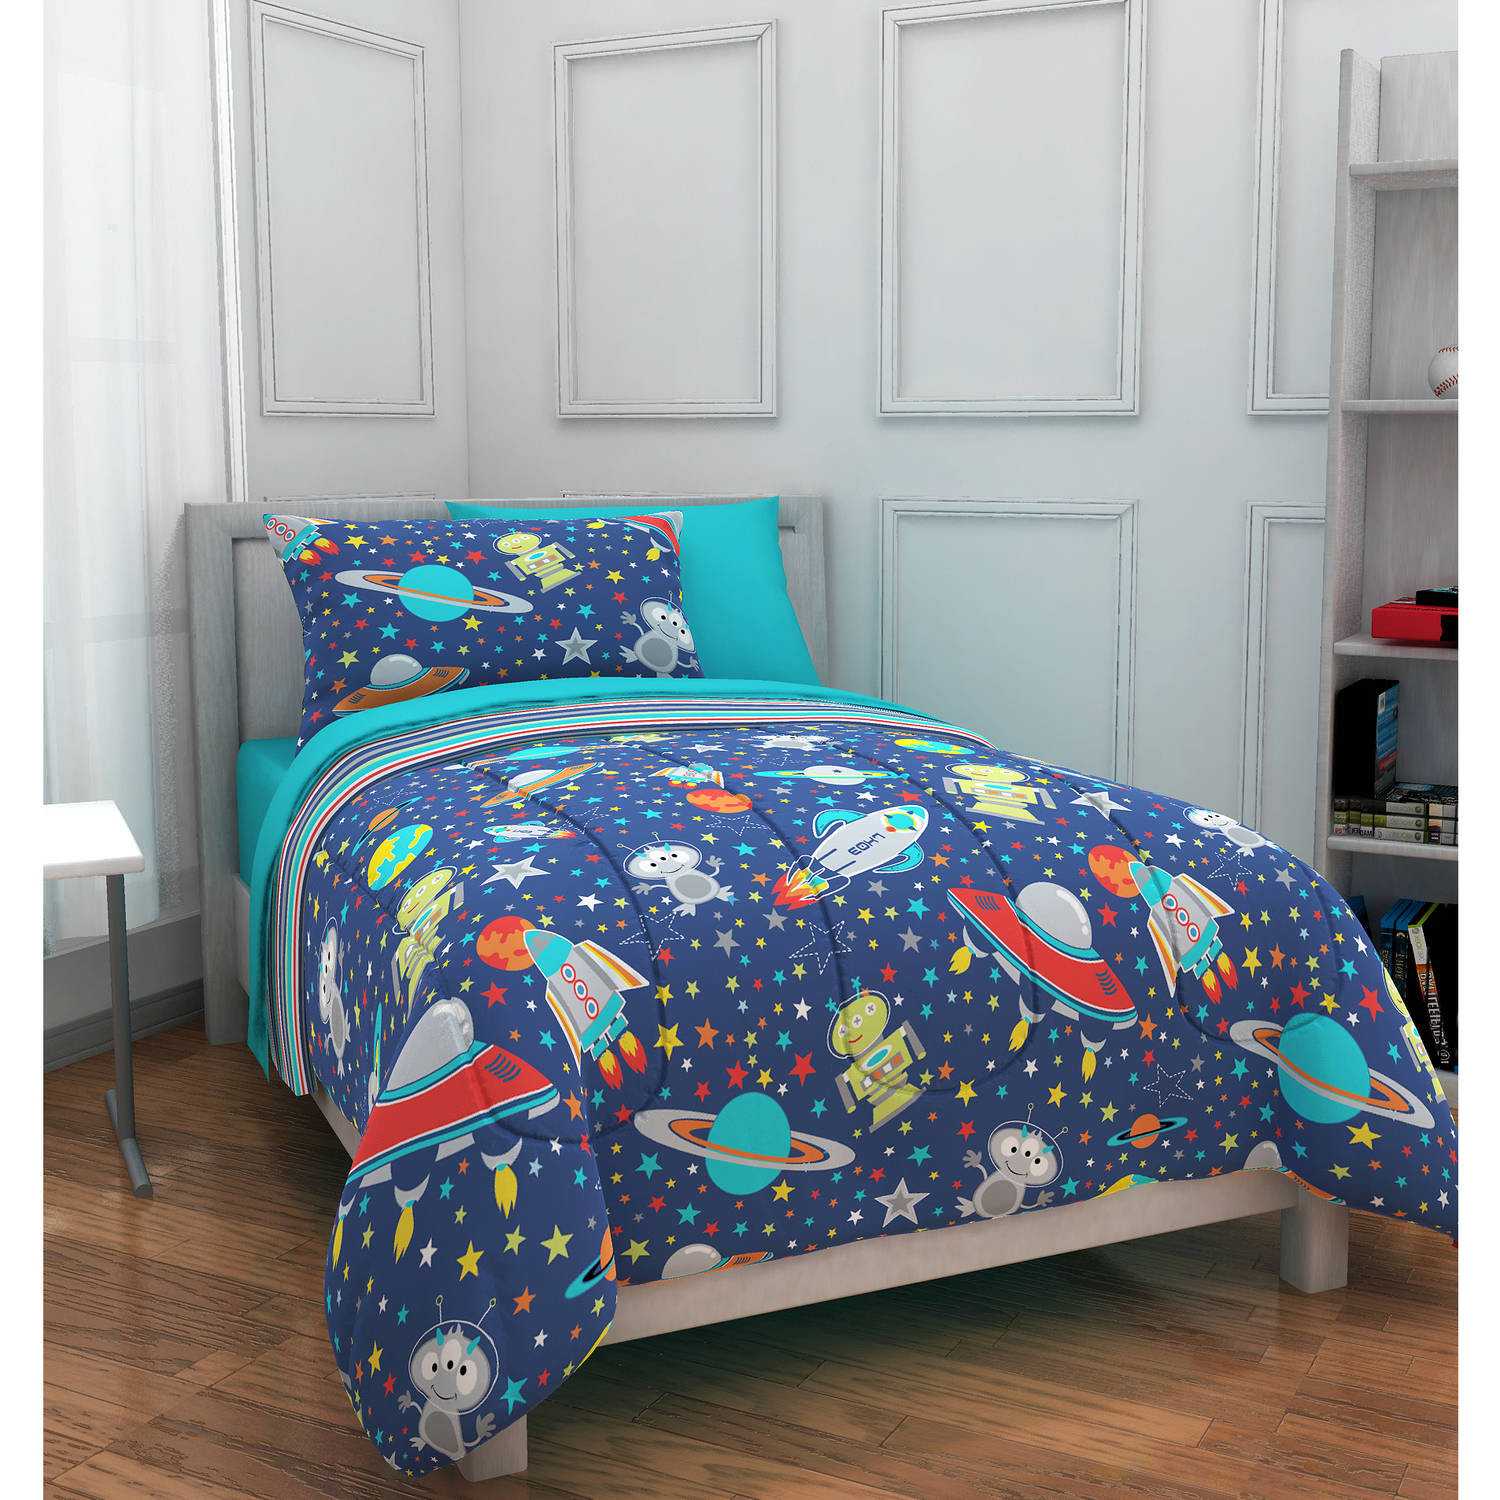 Walmart Kids Bedroom Sets
 Mainstays Kids Outer Space Bed in a Bag Bedding Set